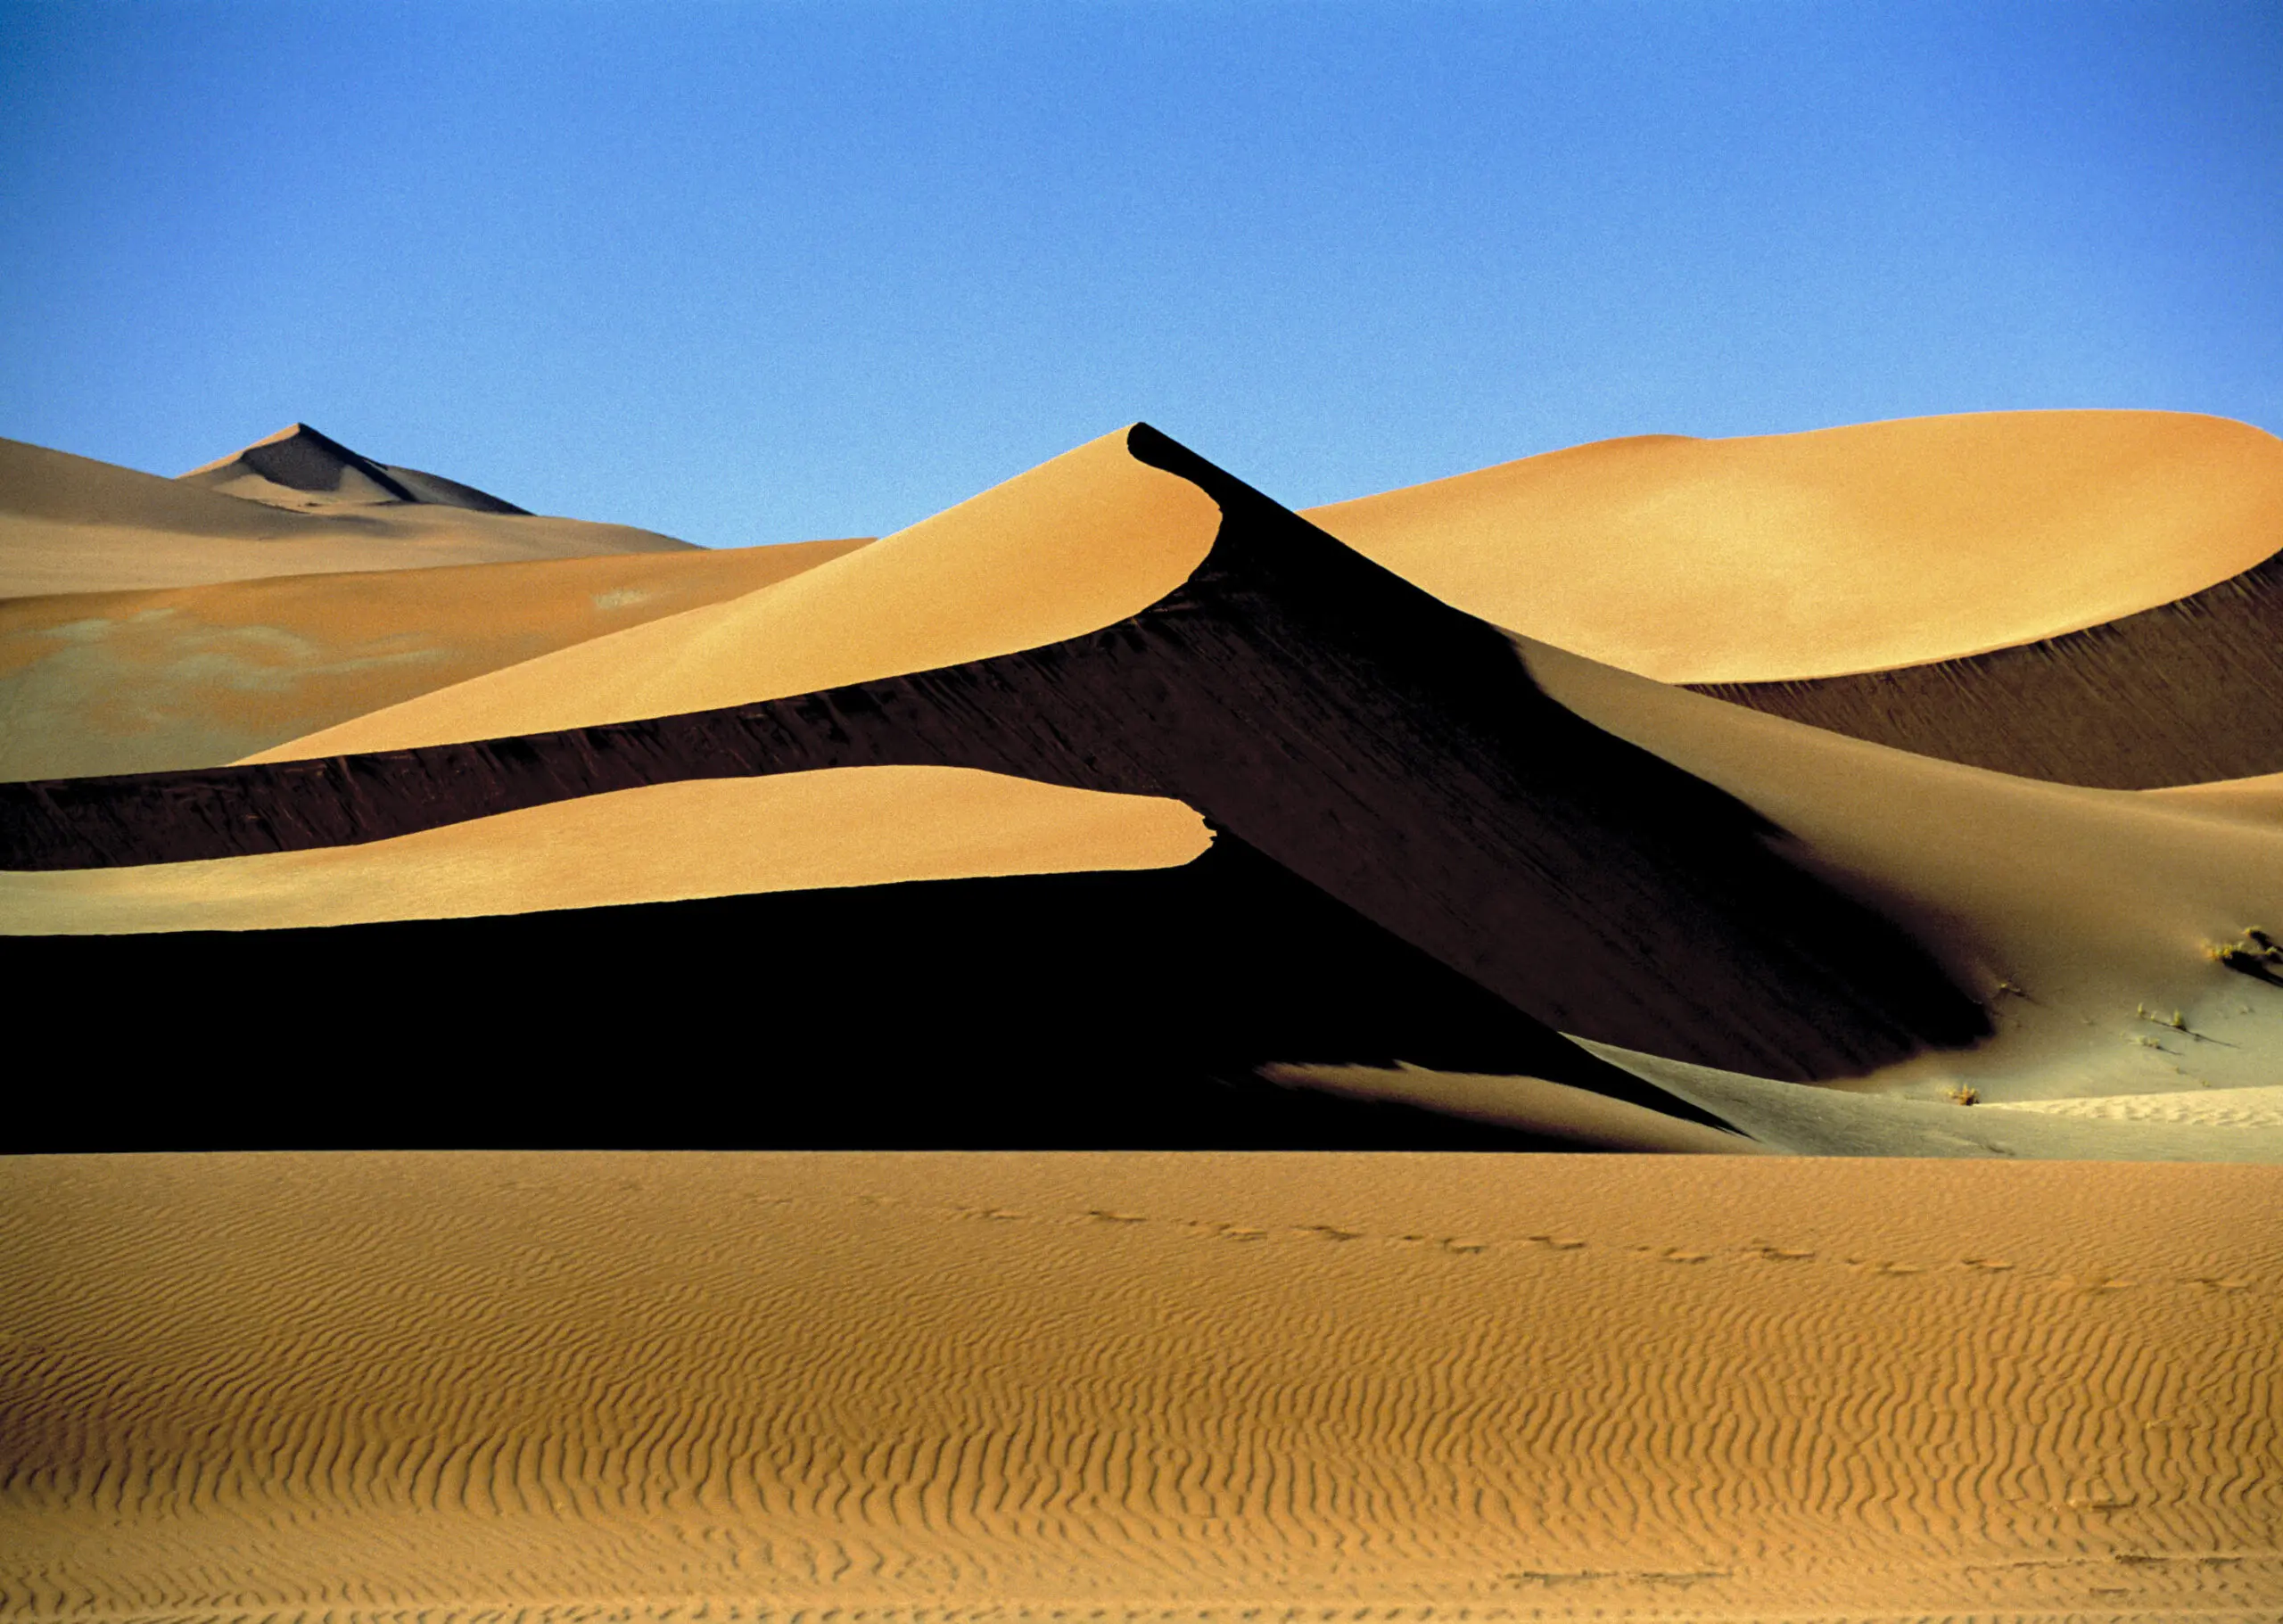 Wandbild (555) Sossousvlei präsentiert: Landschaften,Wüste